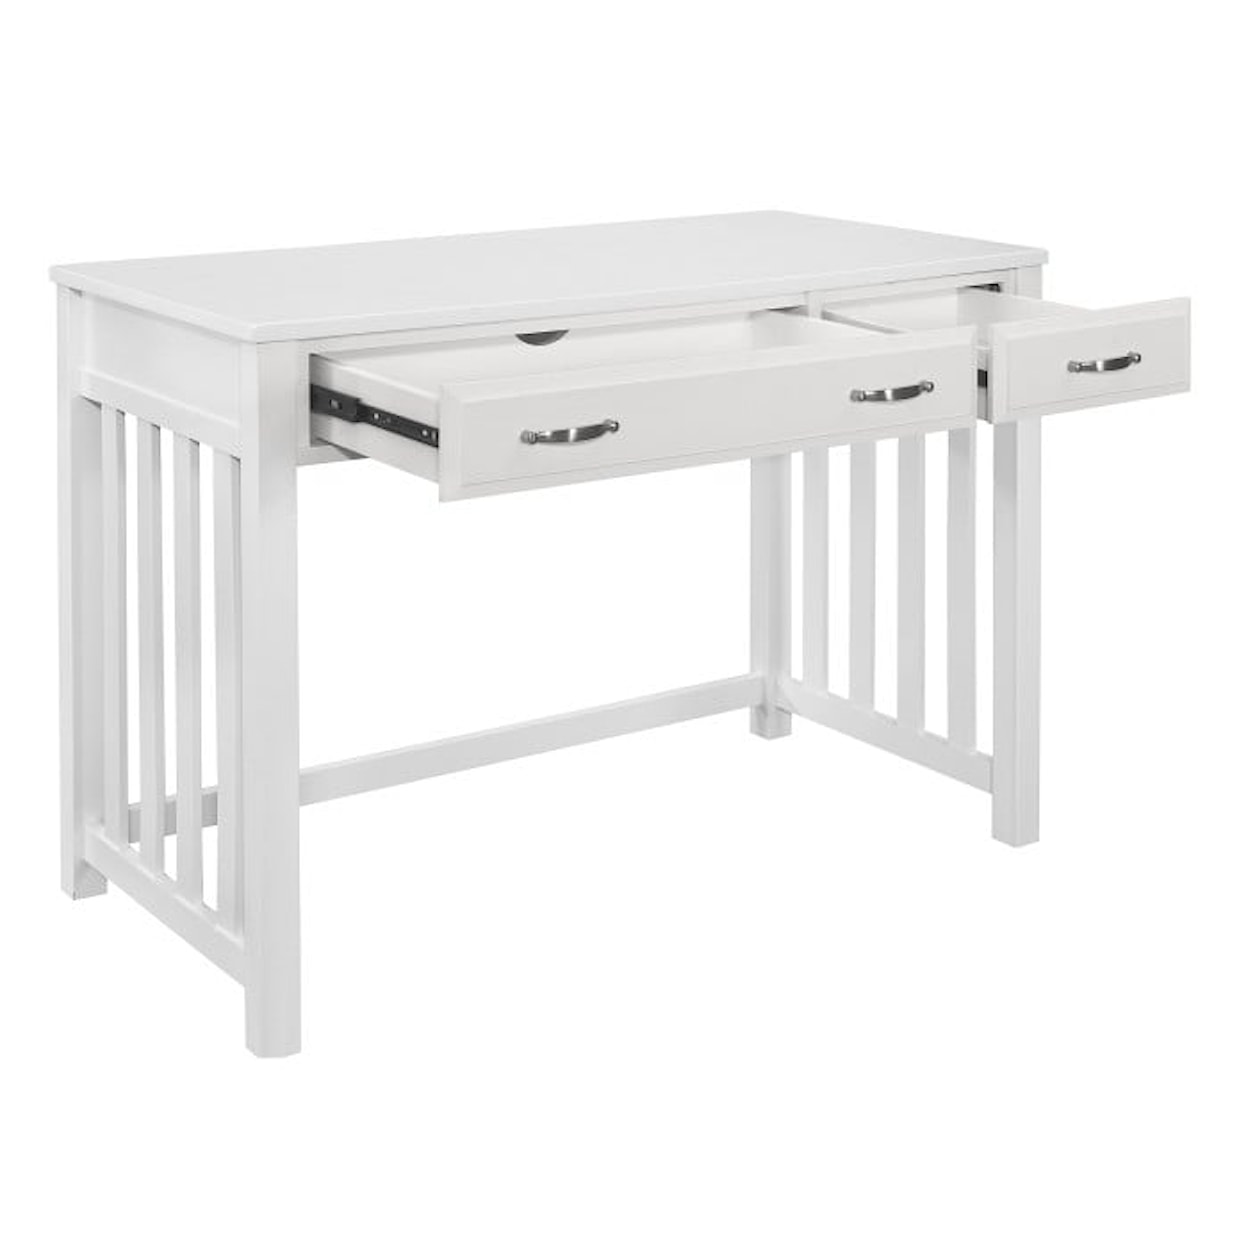 Homelegance Furniture Blanche Desk